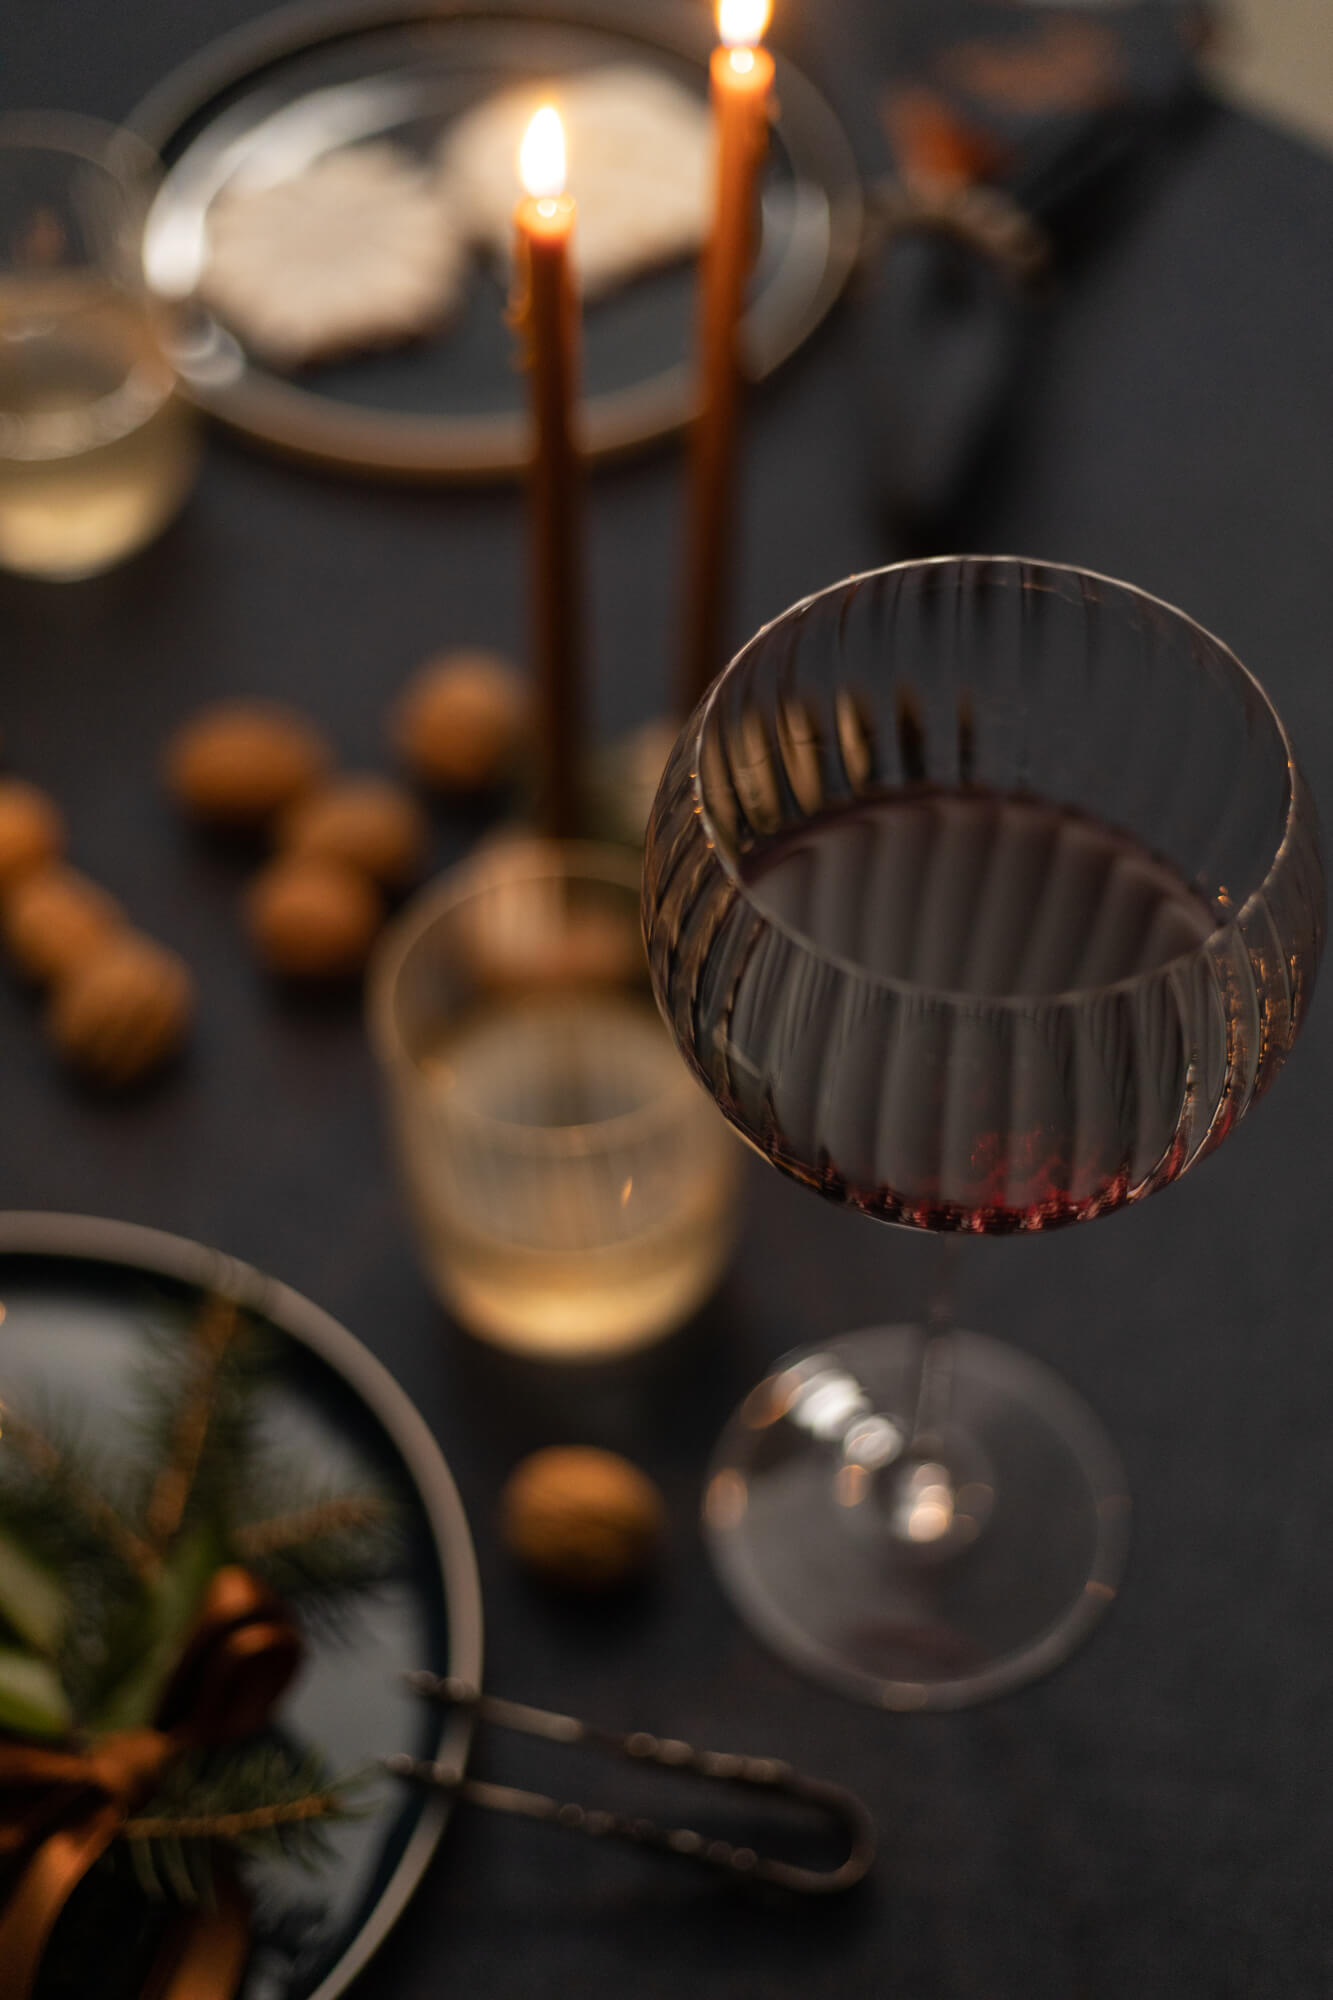 Nakrycie świątecznego stołu. Kieliszek do czerwonego wina i świeczki z wosku pszczelego w świecznikach drewnianych.